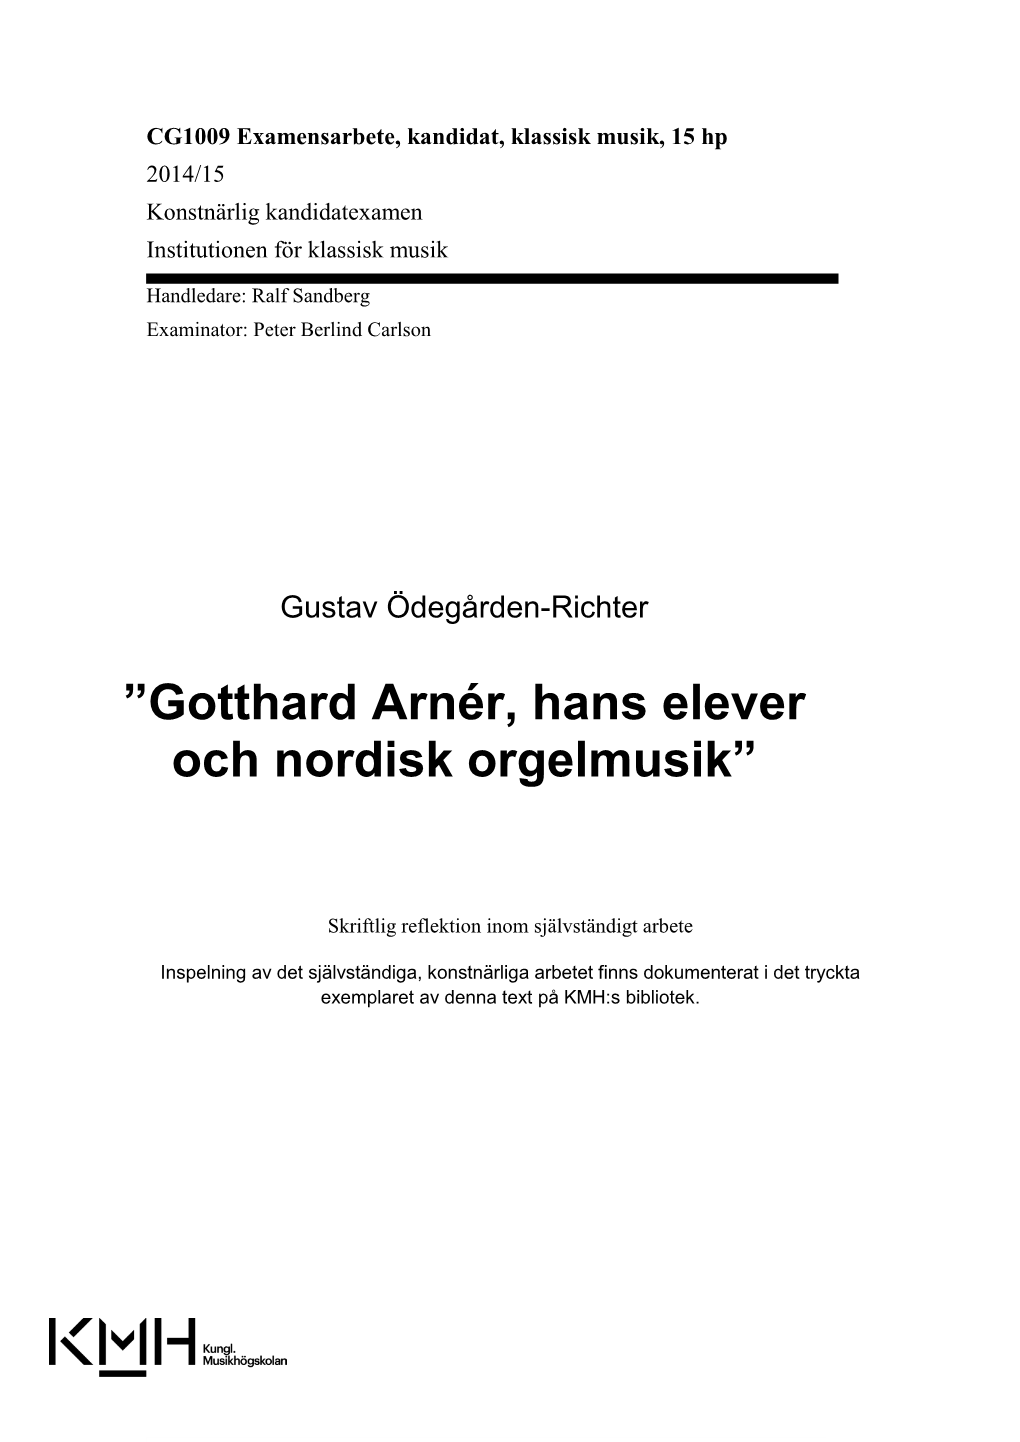 CG1009 Examensarbete, Kandidat, Klassisk Musik, 15 Hp 2014/15 Konstnärlig Kandidatexamen Institutionen För Klassisk Musik